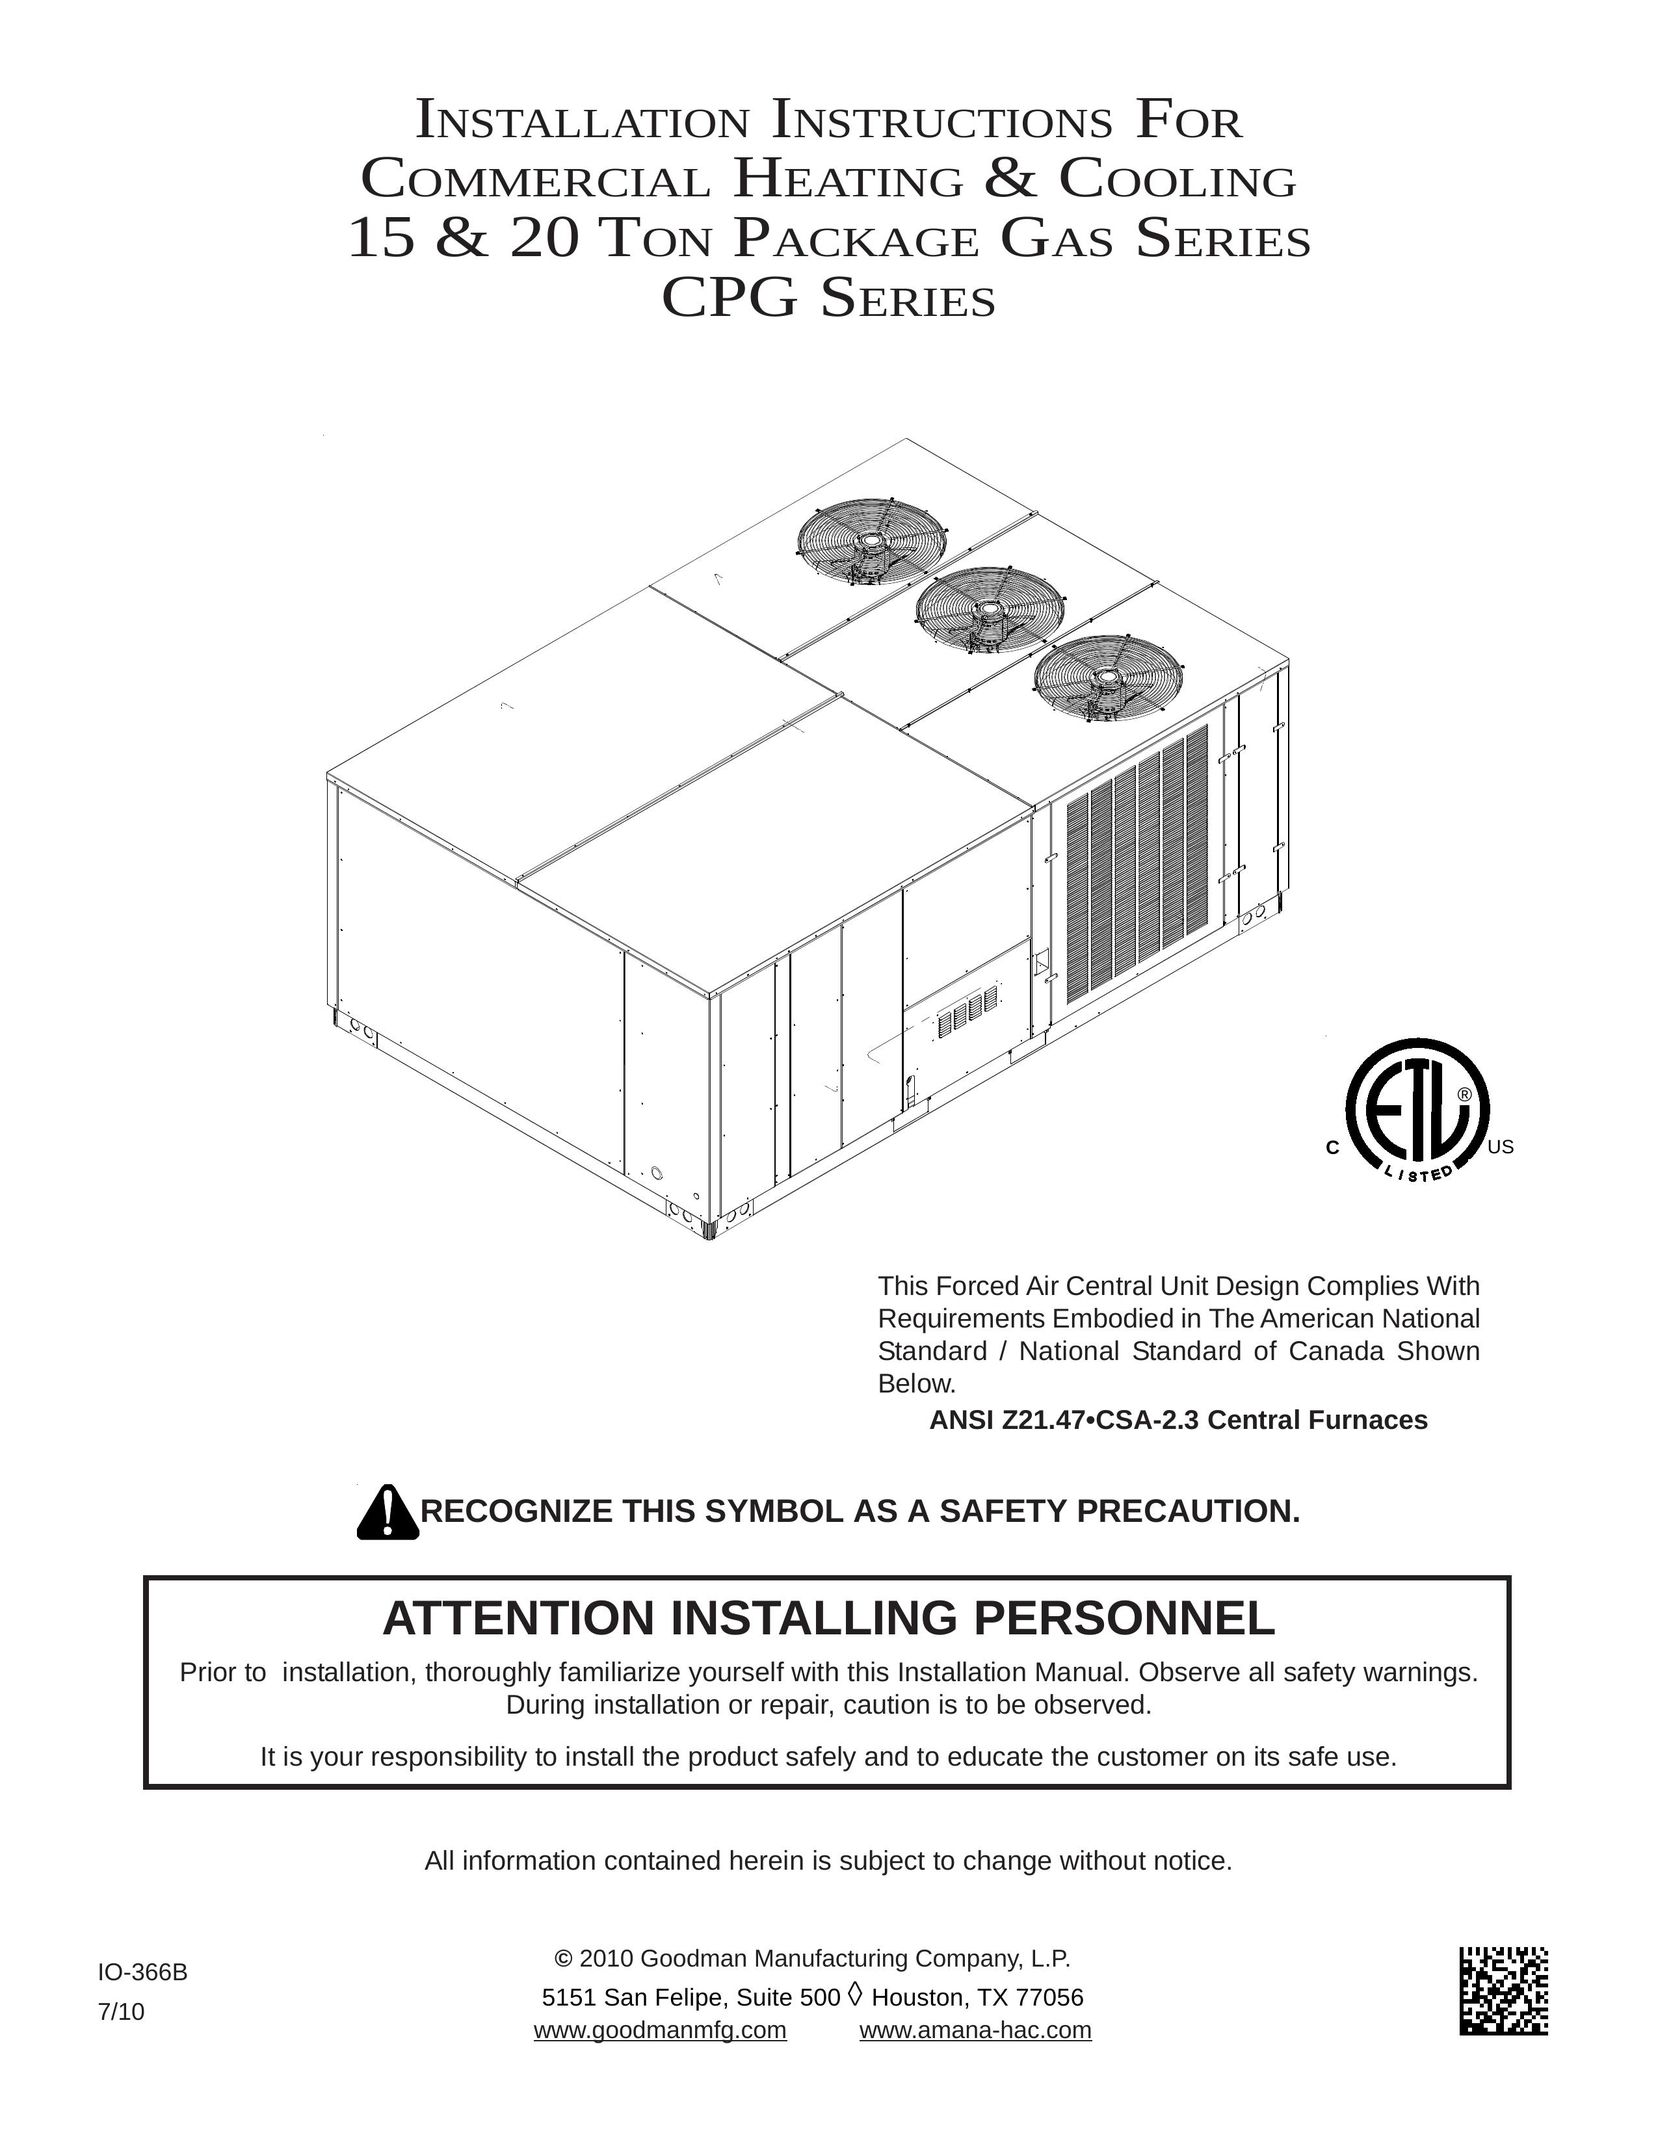 Goodman Mfg ANSI Z21.47CSA-2.3 Gas Heater User Manual